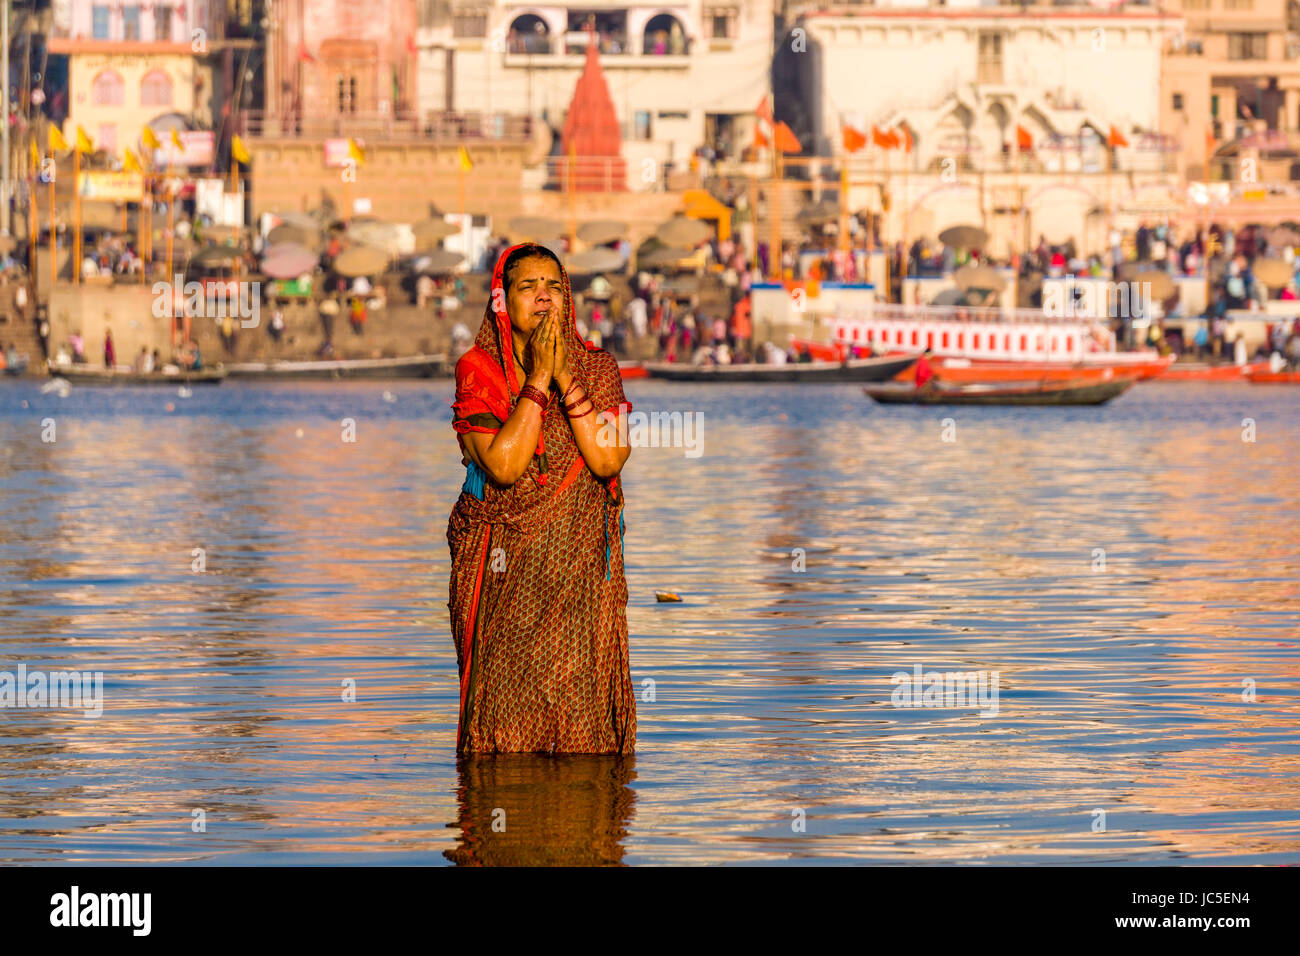 Una donna, pellegrino, sta facendo il bagno e pregando su banchi di sabbia di fiume santo Ganges, panorama di Dashashwamedh Ghat, principale Ghat, nella distanza Foto Stock